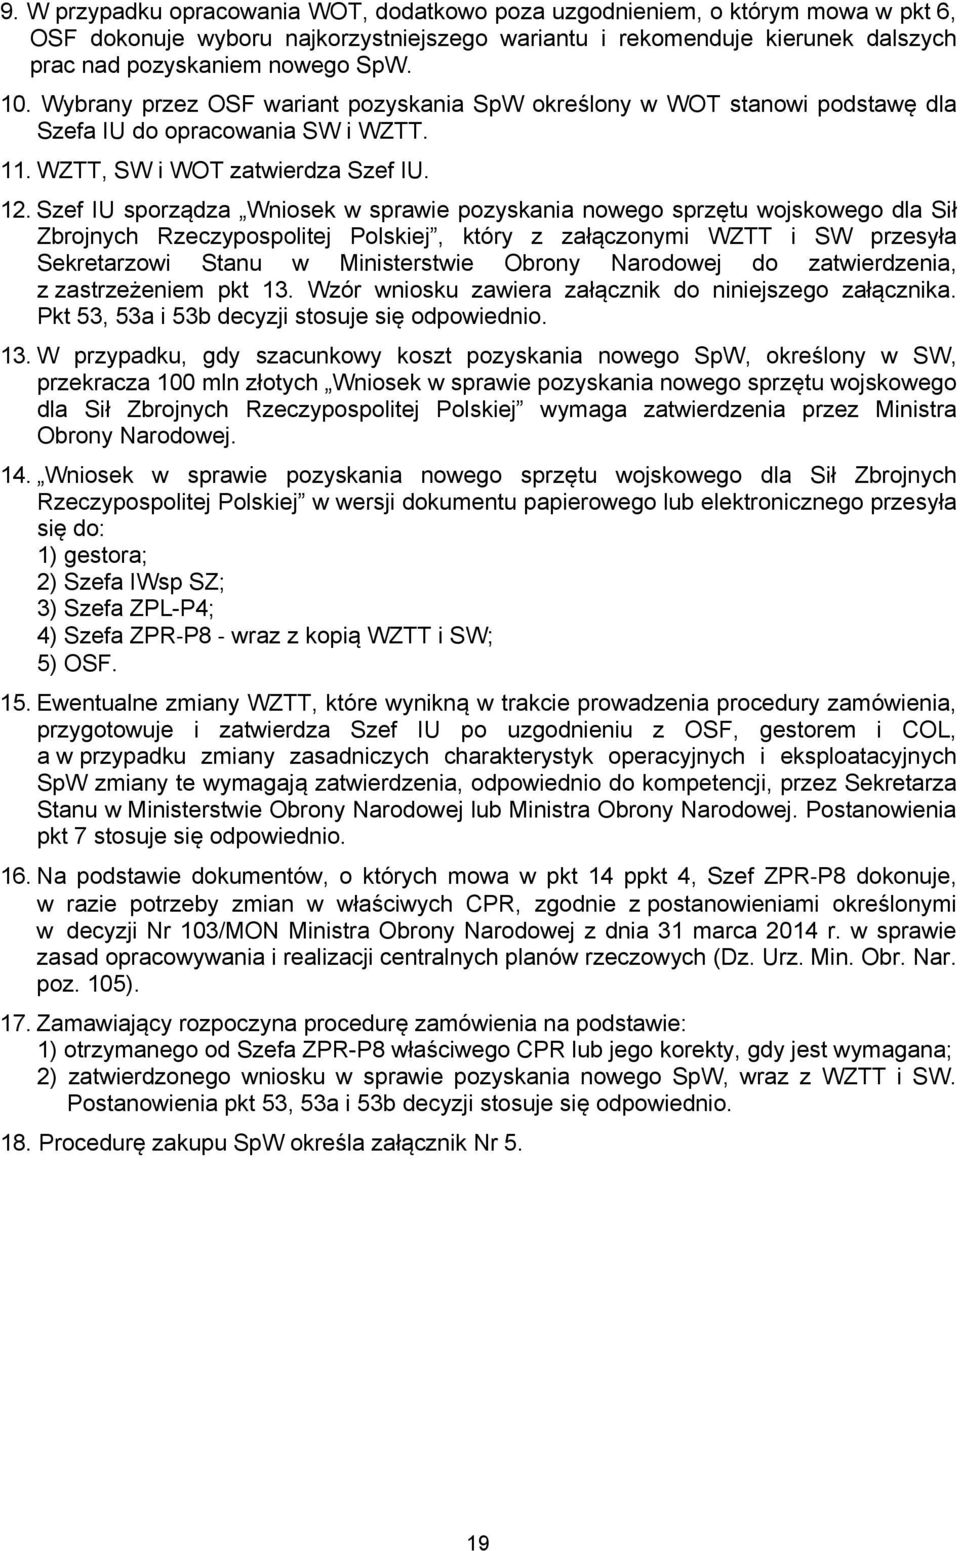 Szef IU sporządza Wniosek w sprawie pozyskania nowego sprzętu wojskowego dla Sił Zbrojnych Rzeczypospolitej Polskiej, który z załączonymi WZTT i SW przesyła Sekretarzowi Stanu w Ministerstwie Obrony